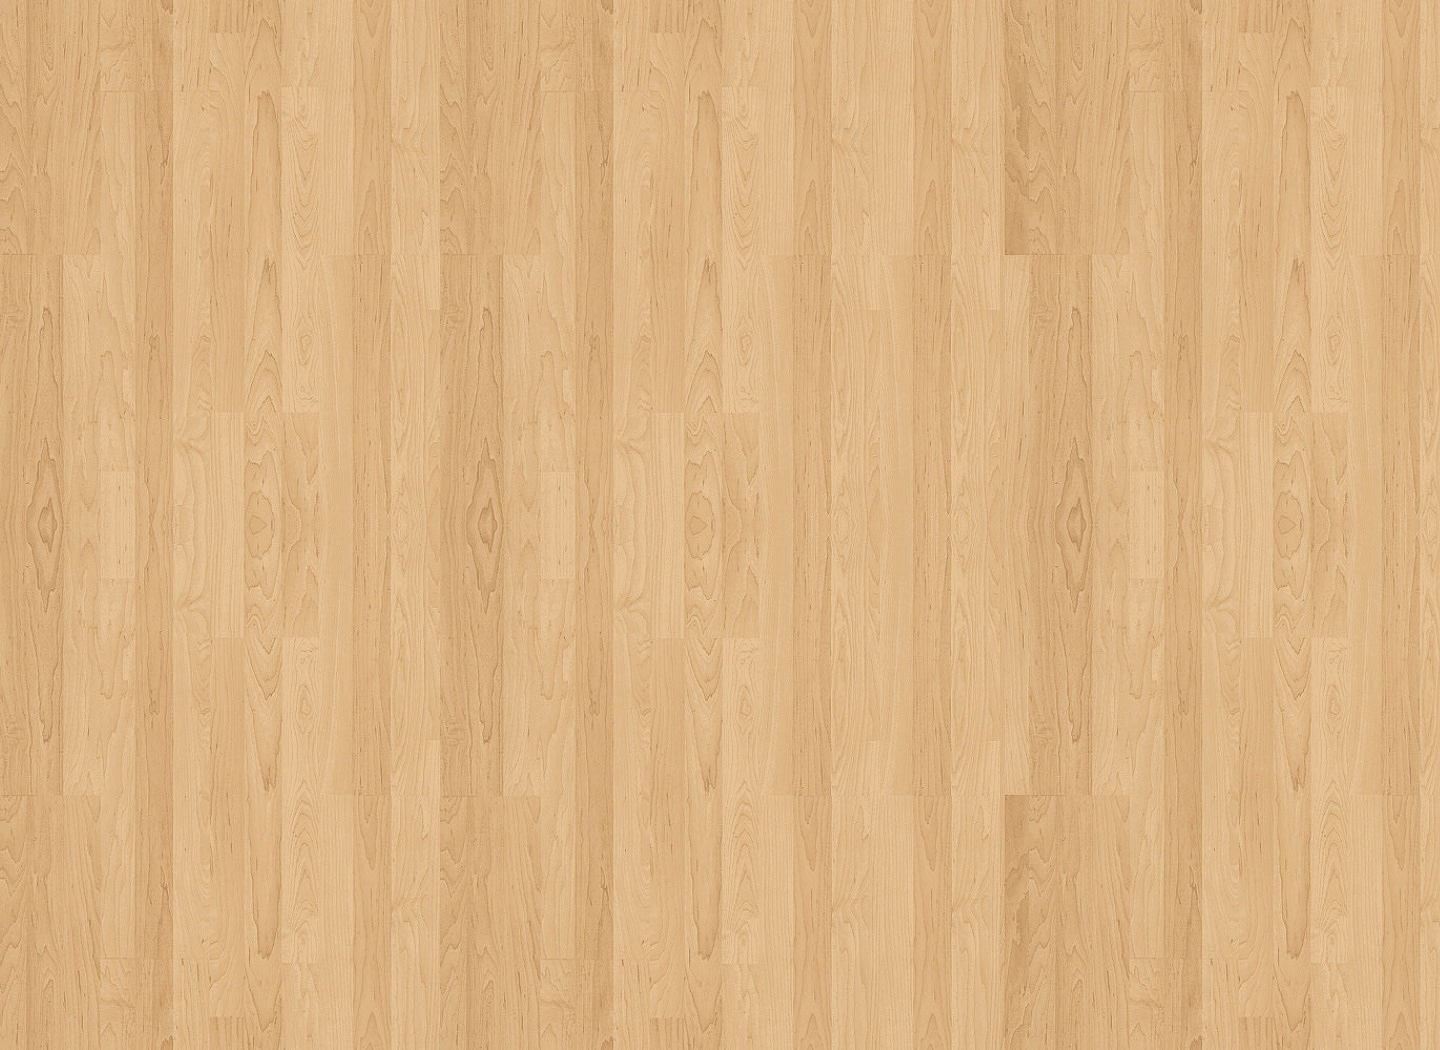 carta da parati in legno per pareti,legna,pavimento in legno,color legno,pavimentazione,pavimento laminato